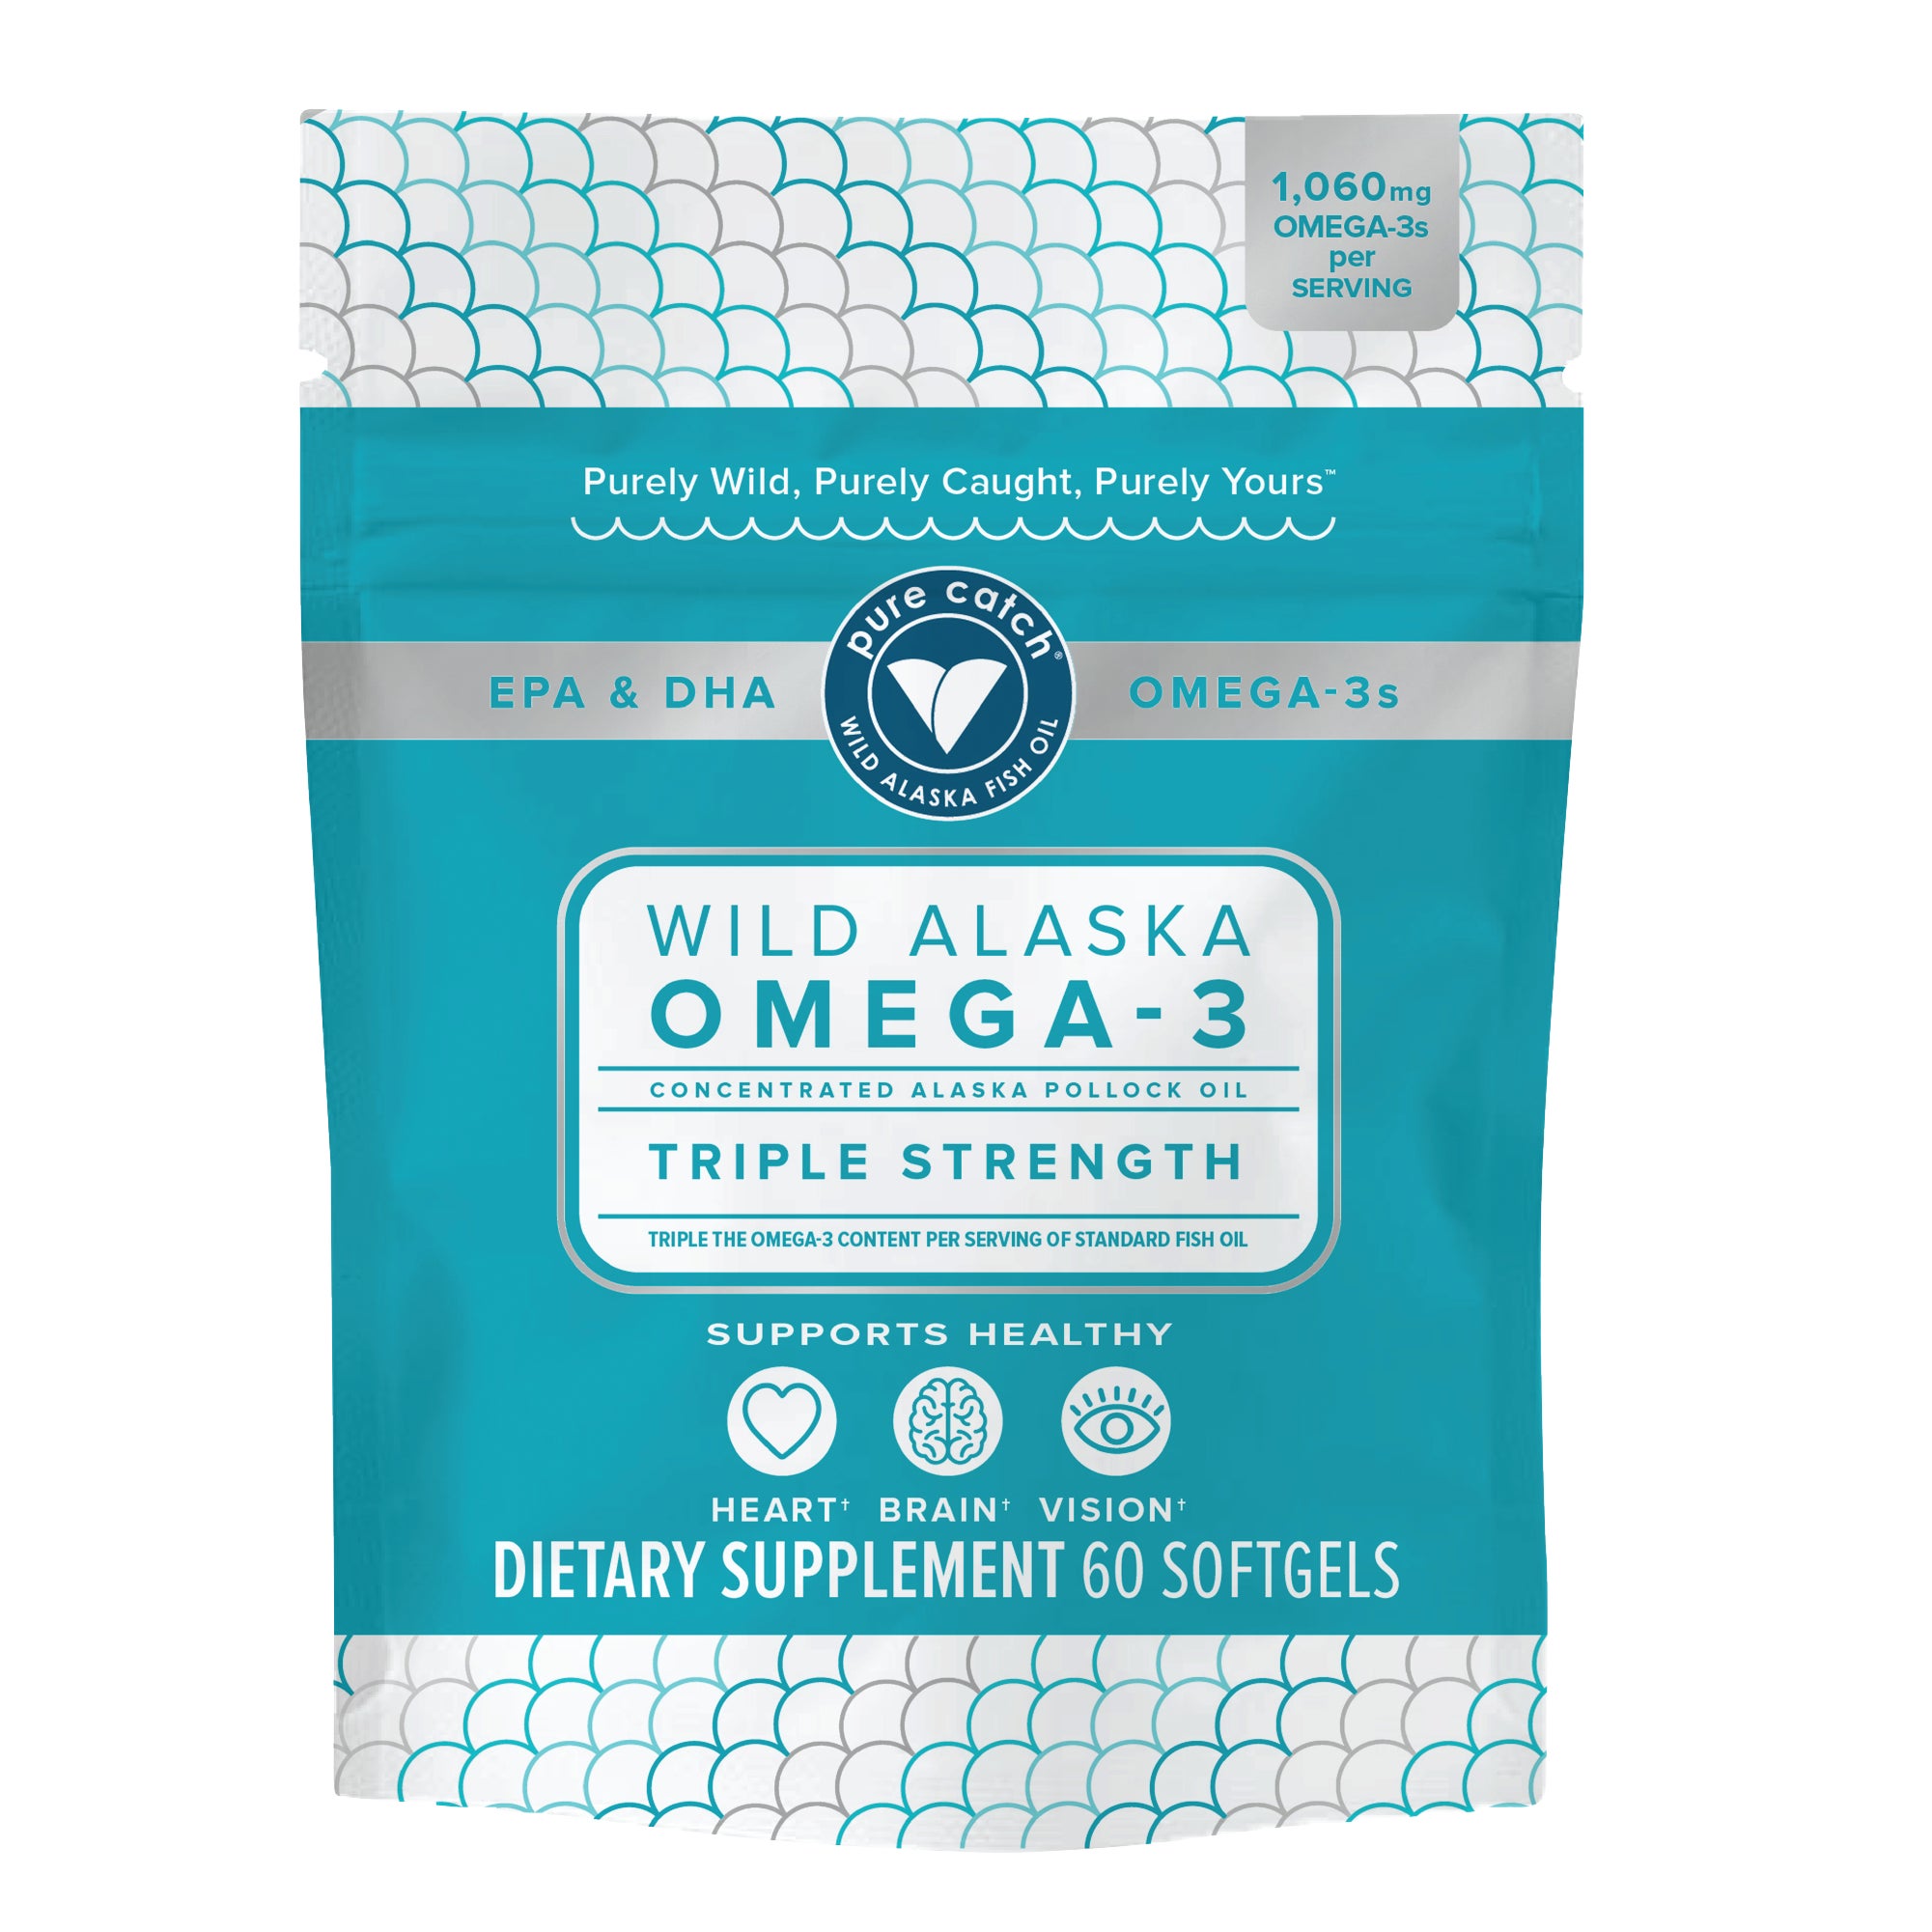 Wild Alaska Omega-3 Concentrated Fish Oil Supplement slide 0